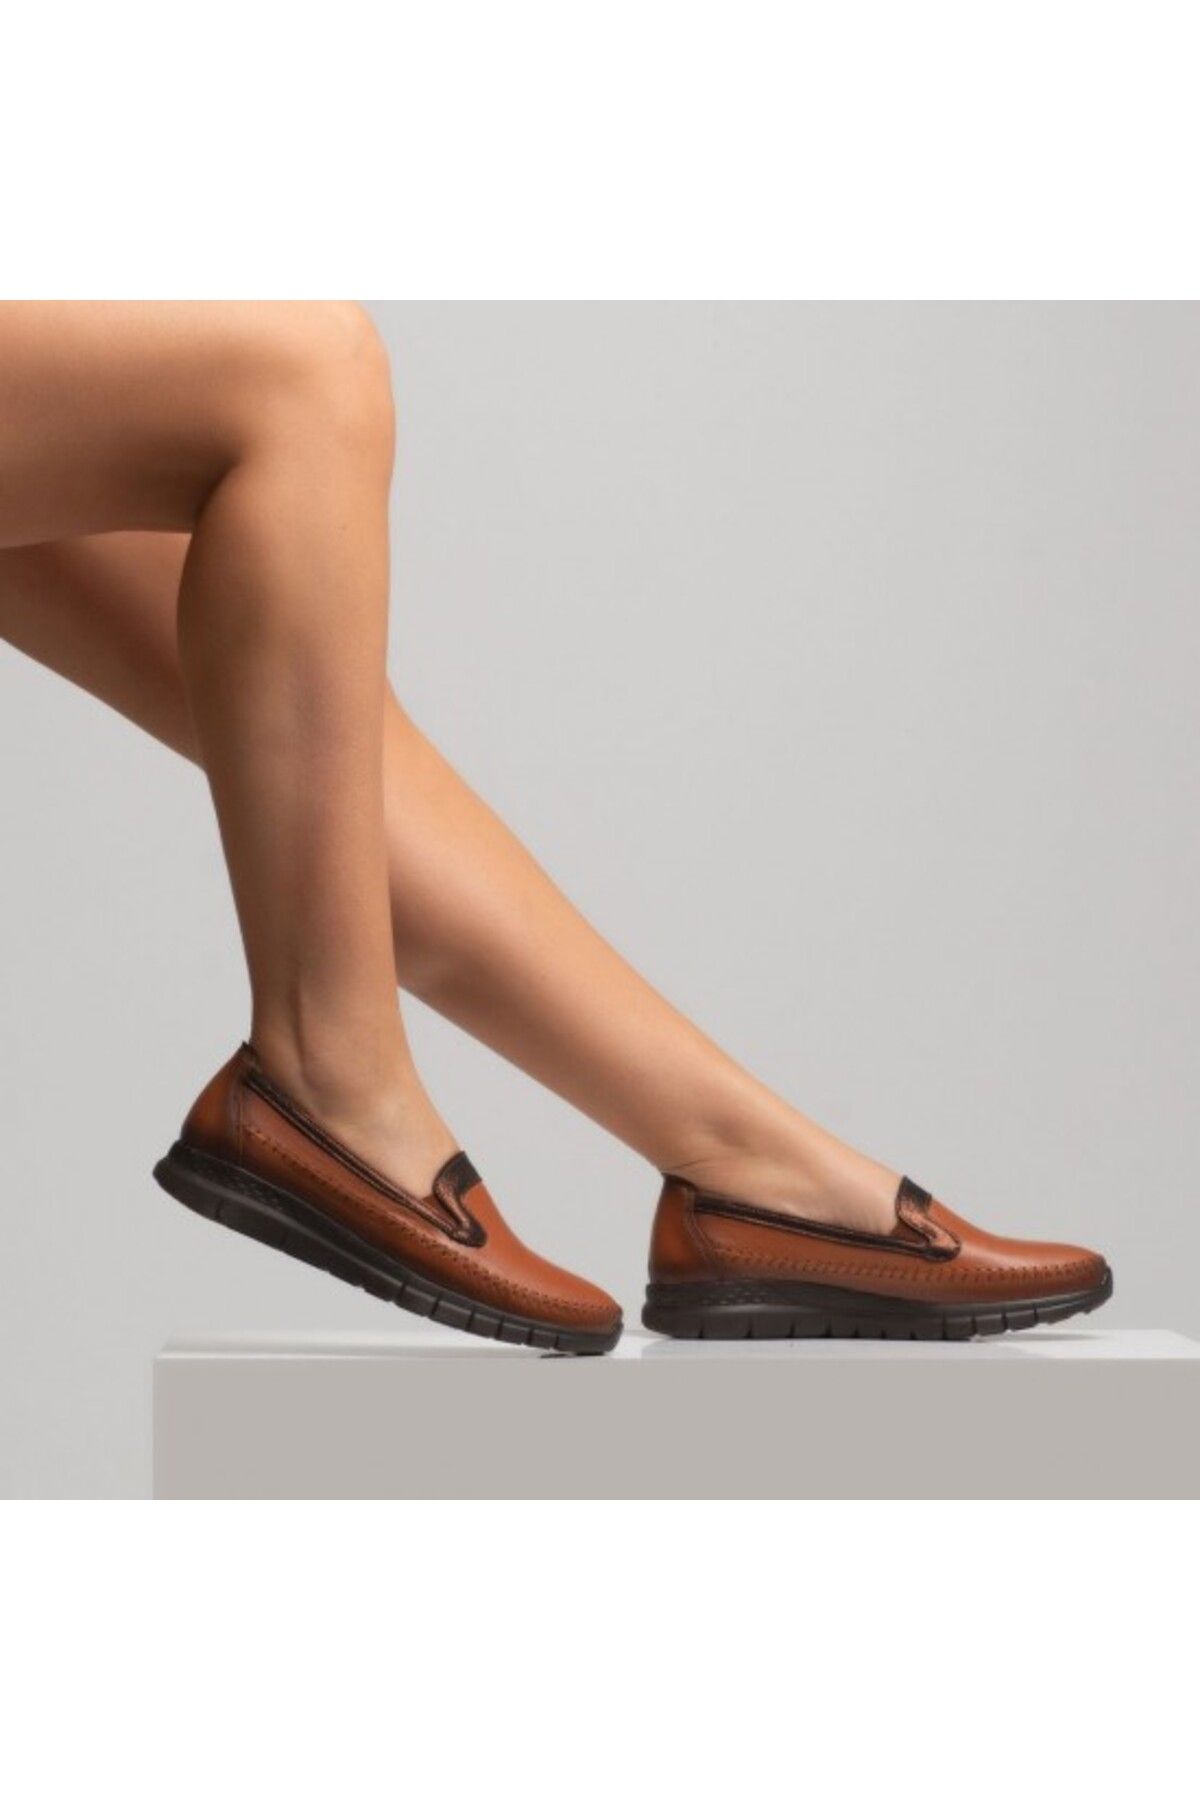 Modena Hakiki Deri Topuk Dikenine Özel Kadın Ayakkabı E 21 7011